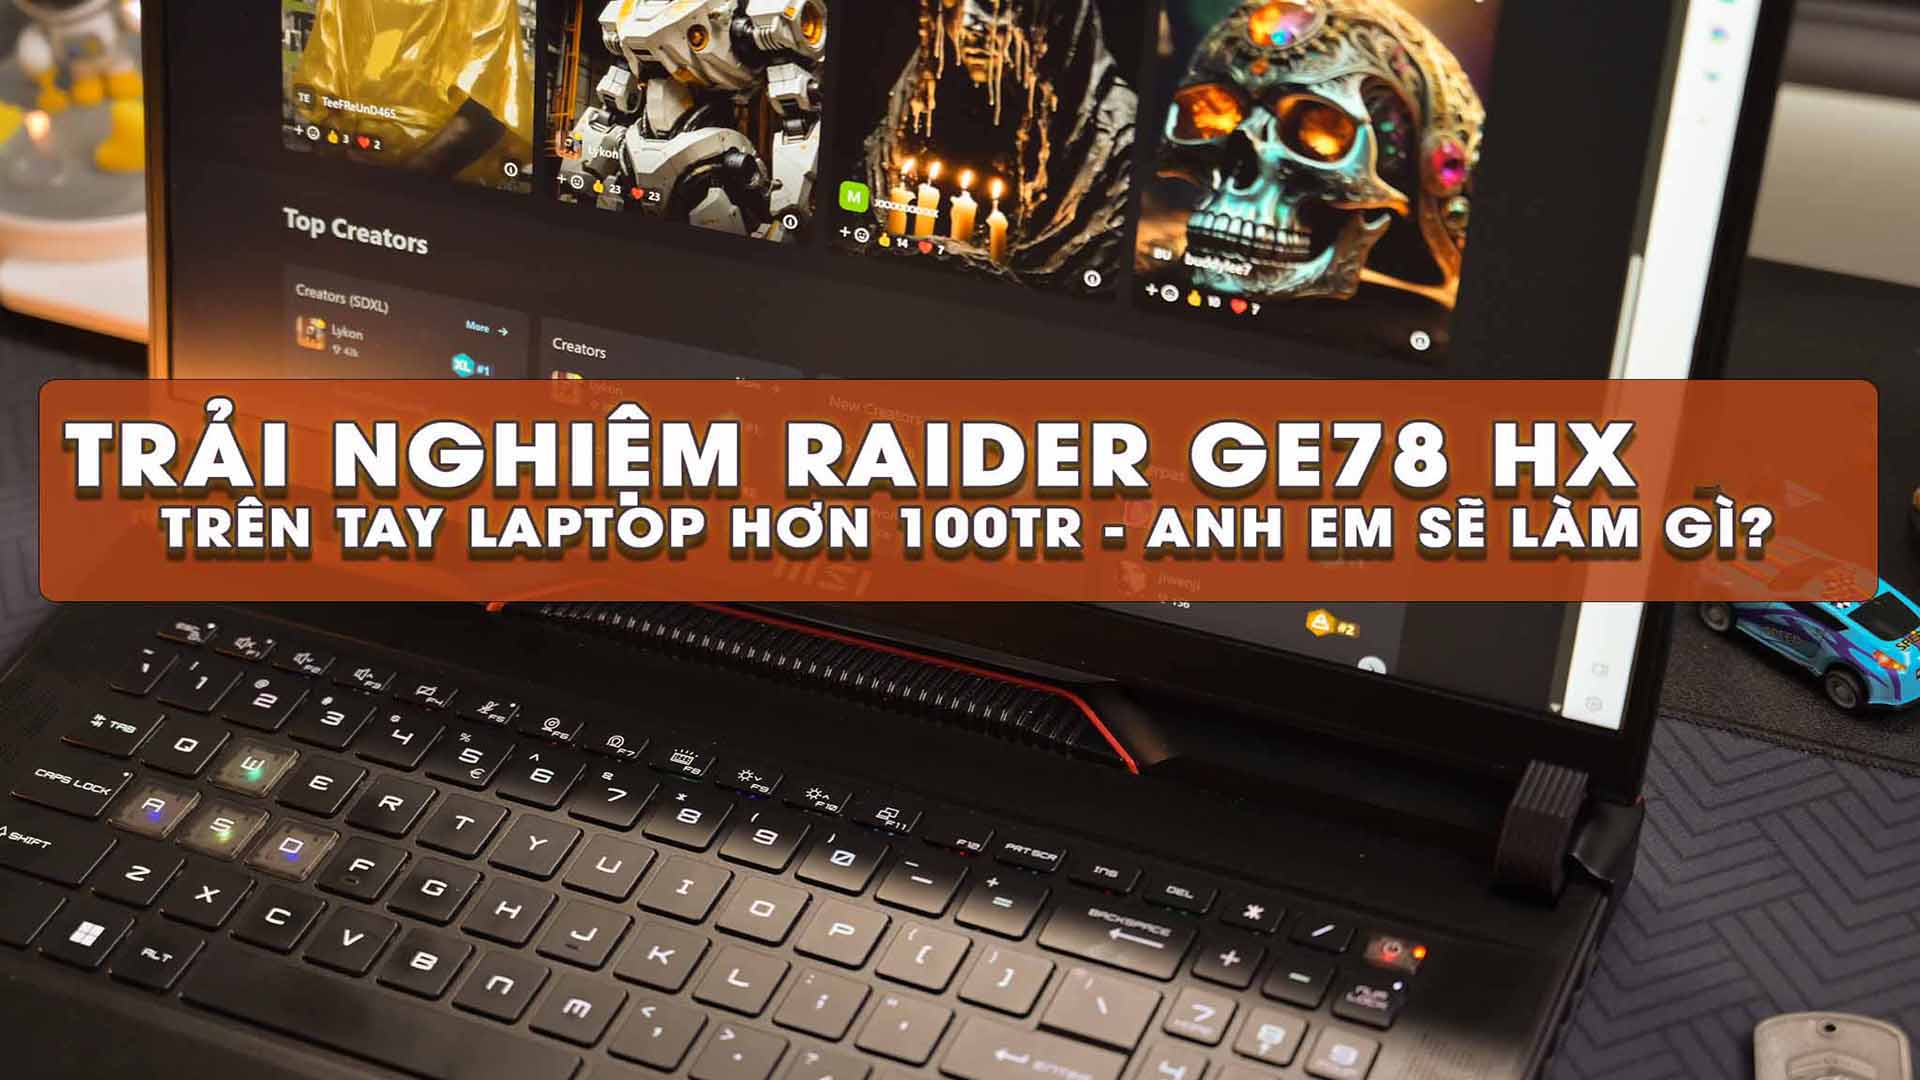 Trải nghiệm RAIDER GE78 HX - Trên tay Laptop gaming hơn 100 triệu thì anh em sẽ làm gì ?